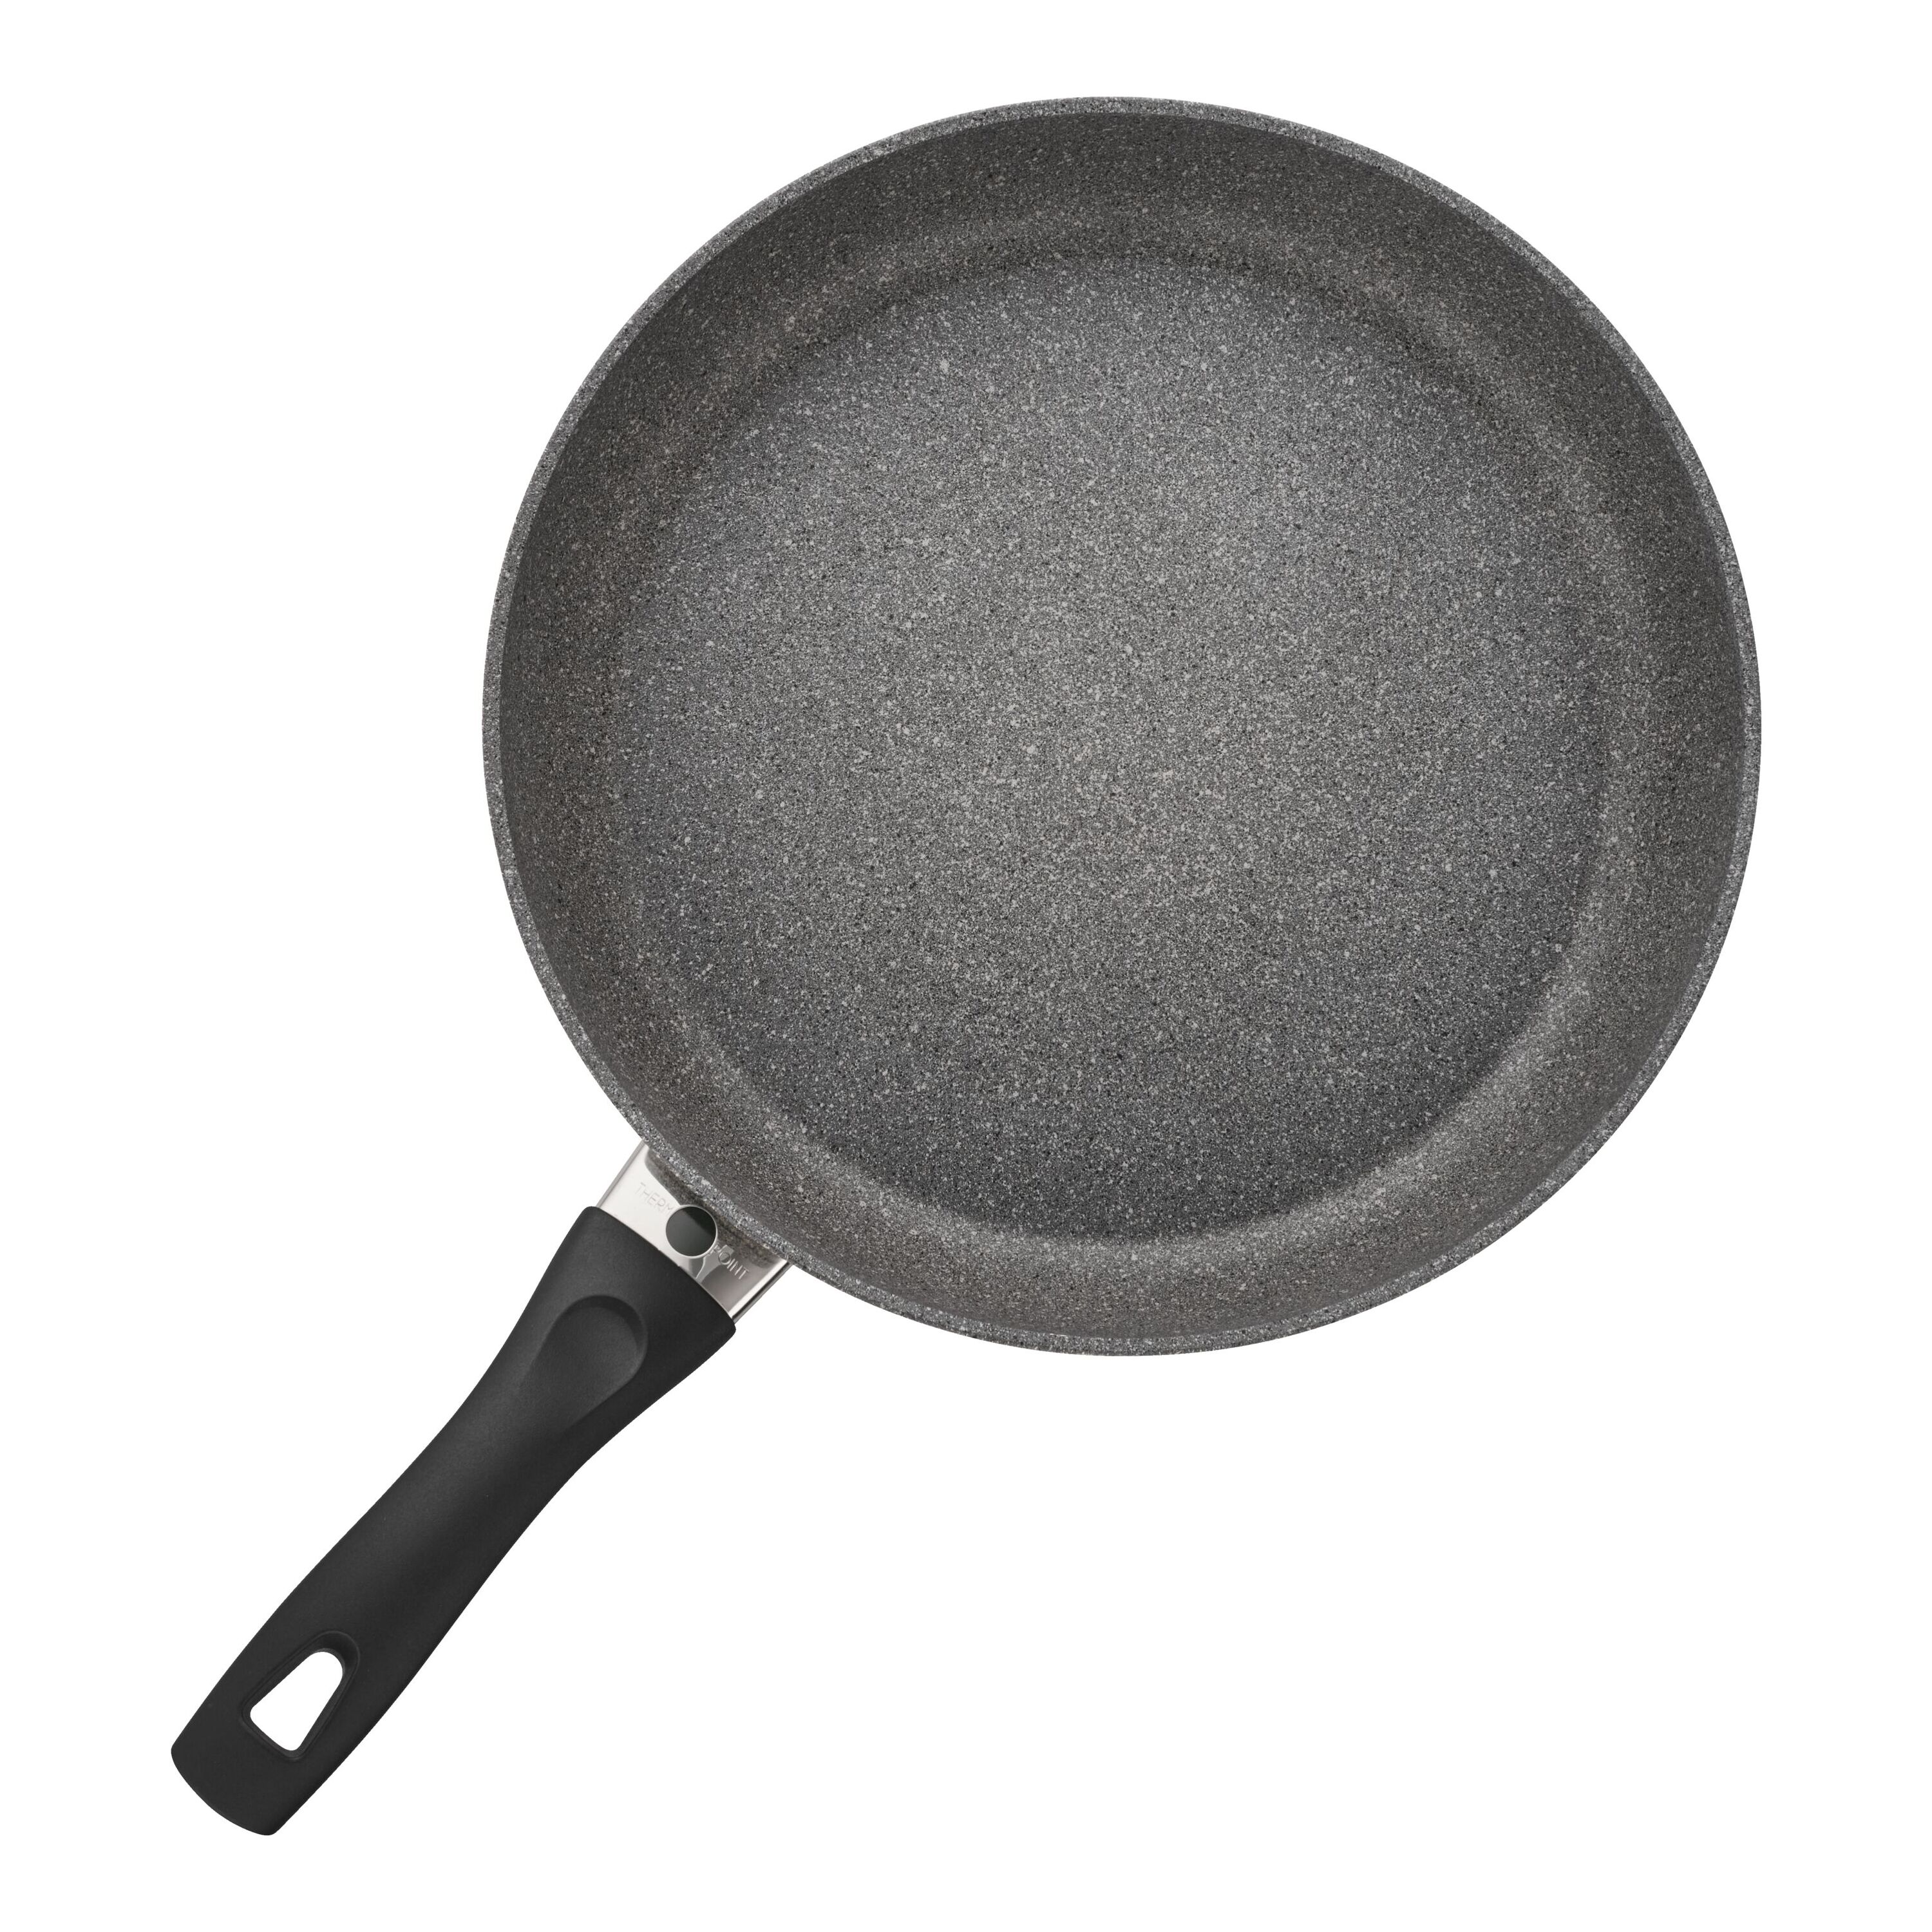 Art And Cook Aluminum Non Stick 8'' Frying Pan Set & Reviews